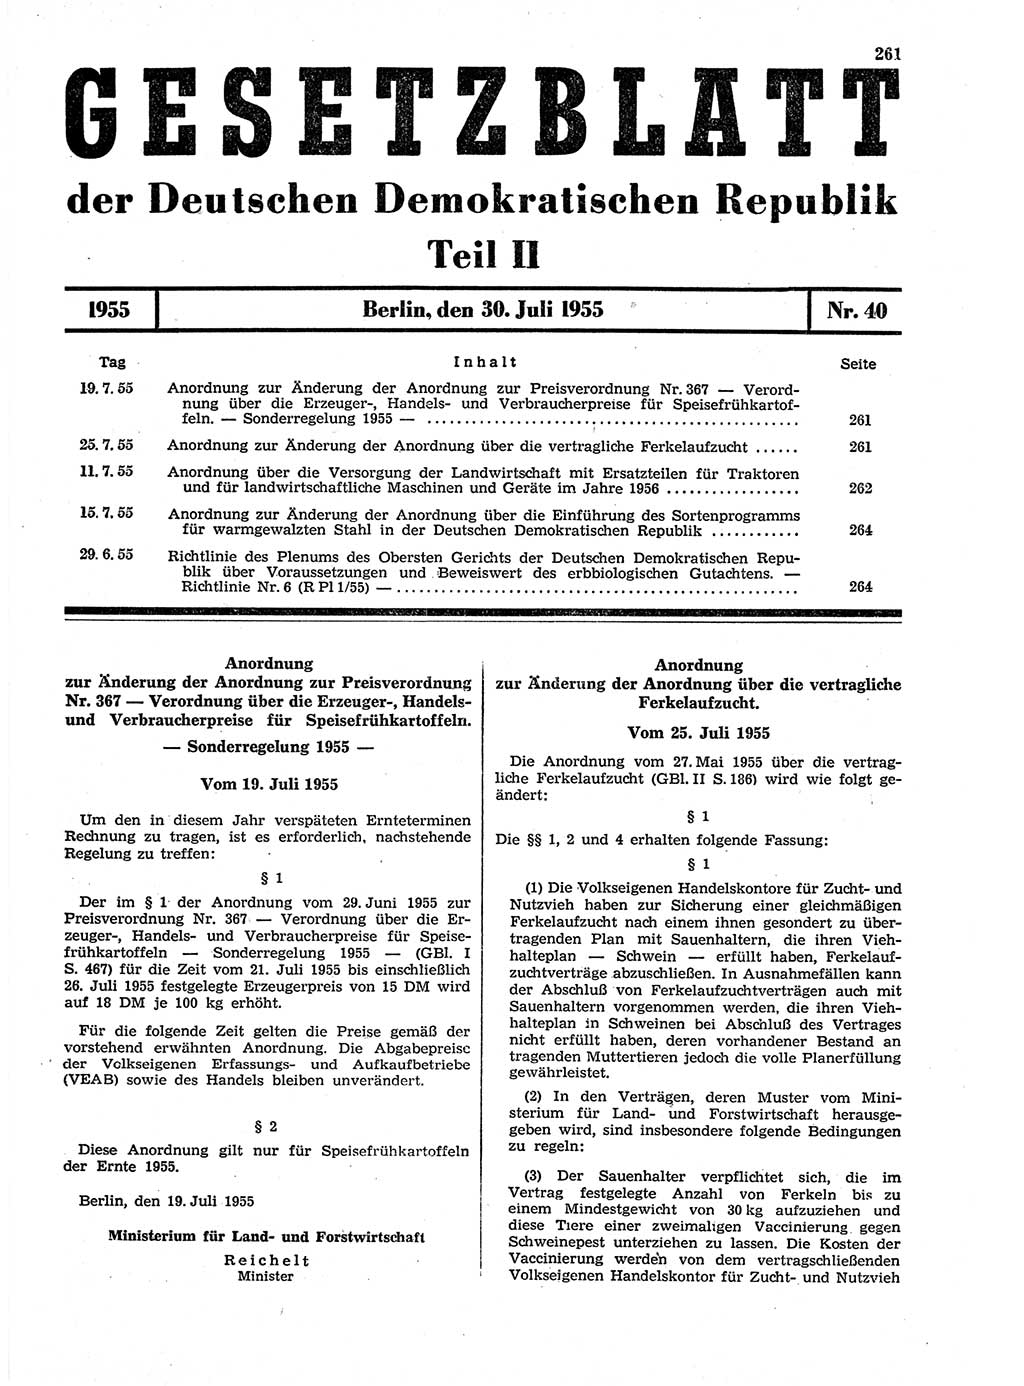 Gesetzblatt (GBl.) der Deutschen Demokratischen Republik (DDR) Teil ⅠⅠ 1955, Seite 261 (GBl. DDR ⅠⅠ 1955, S. 261)